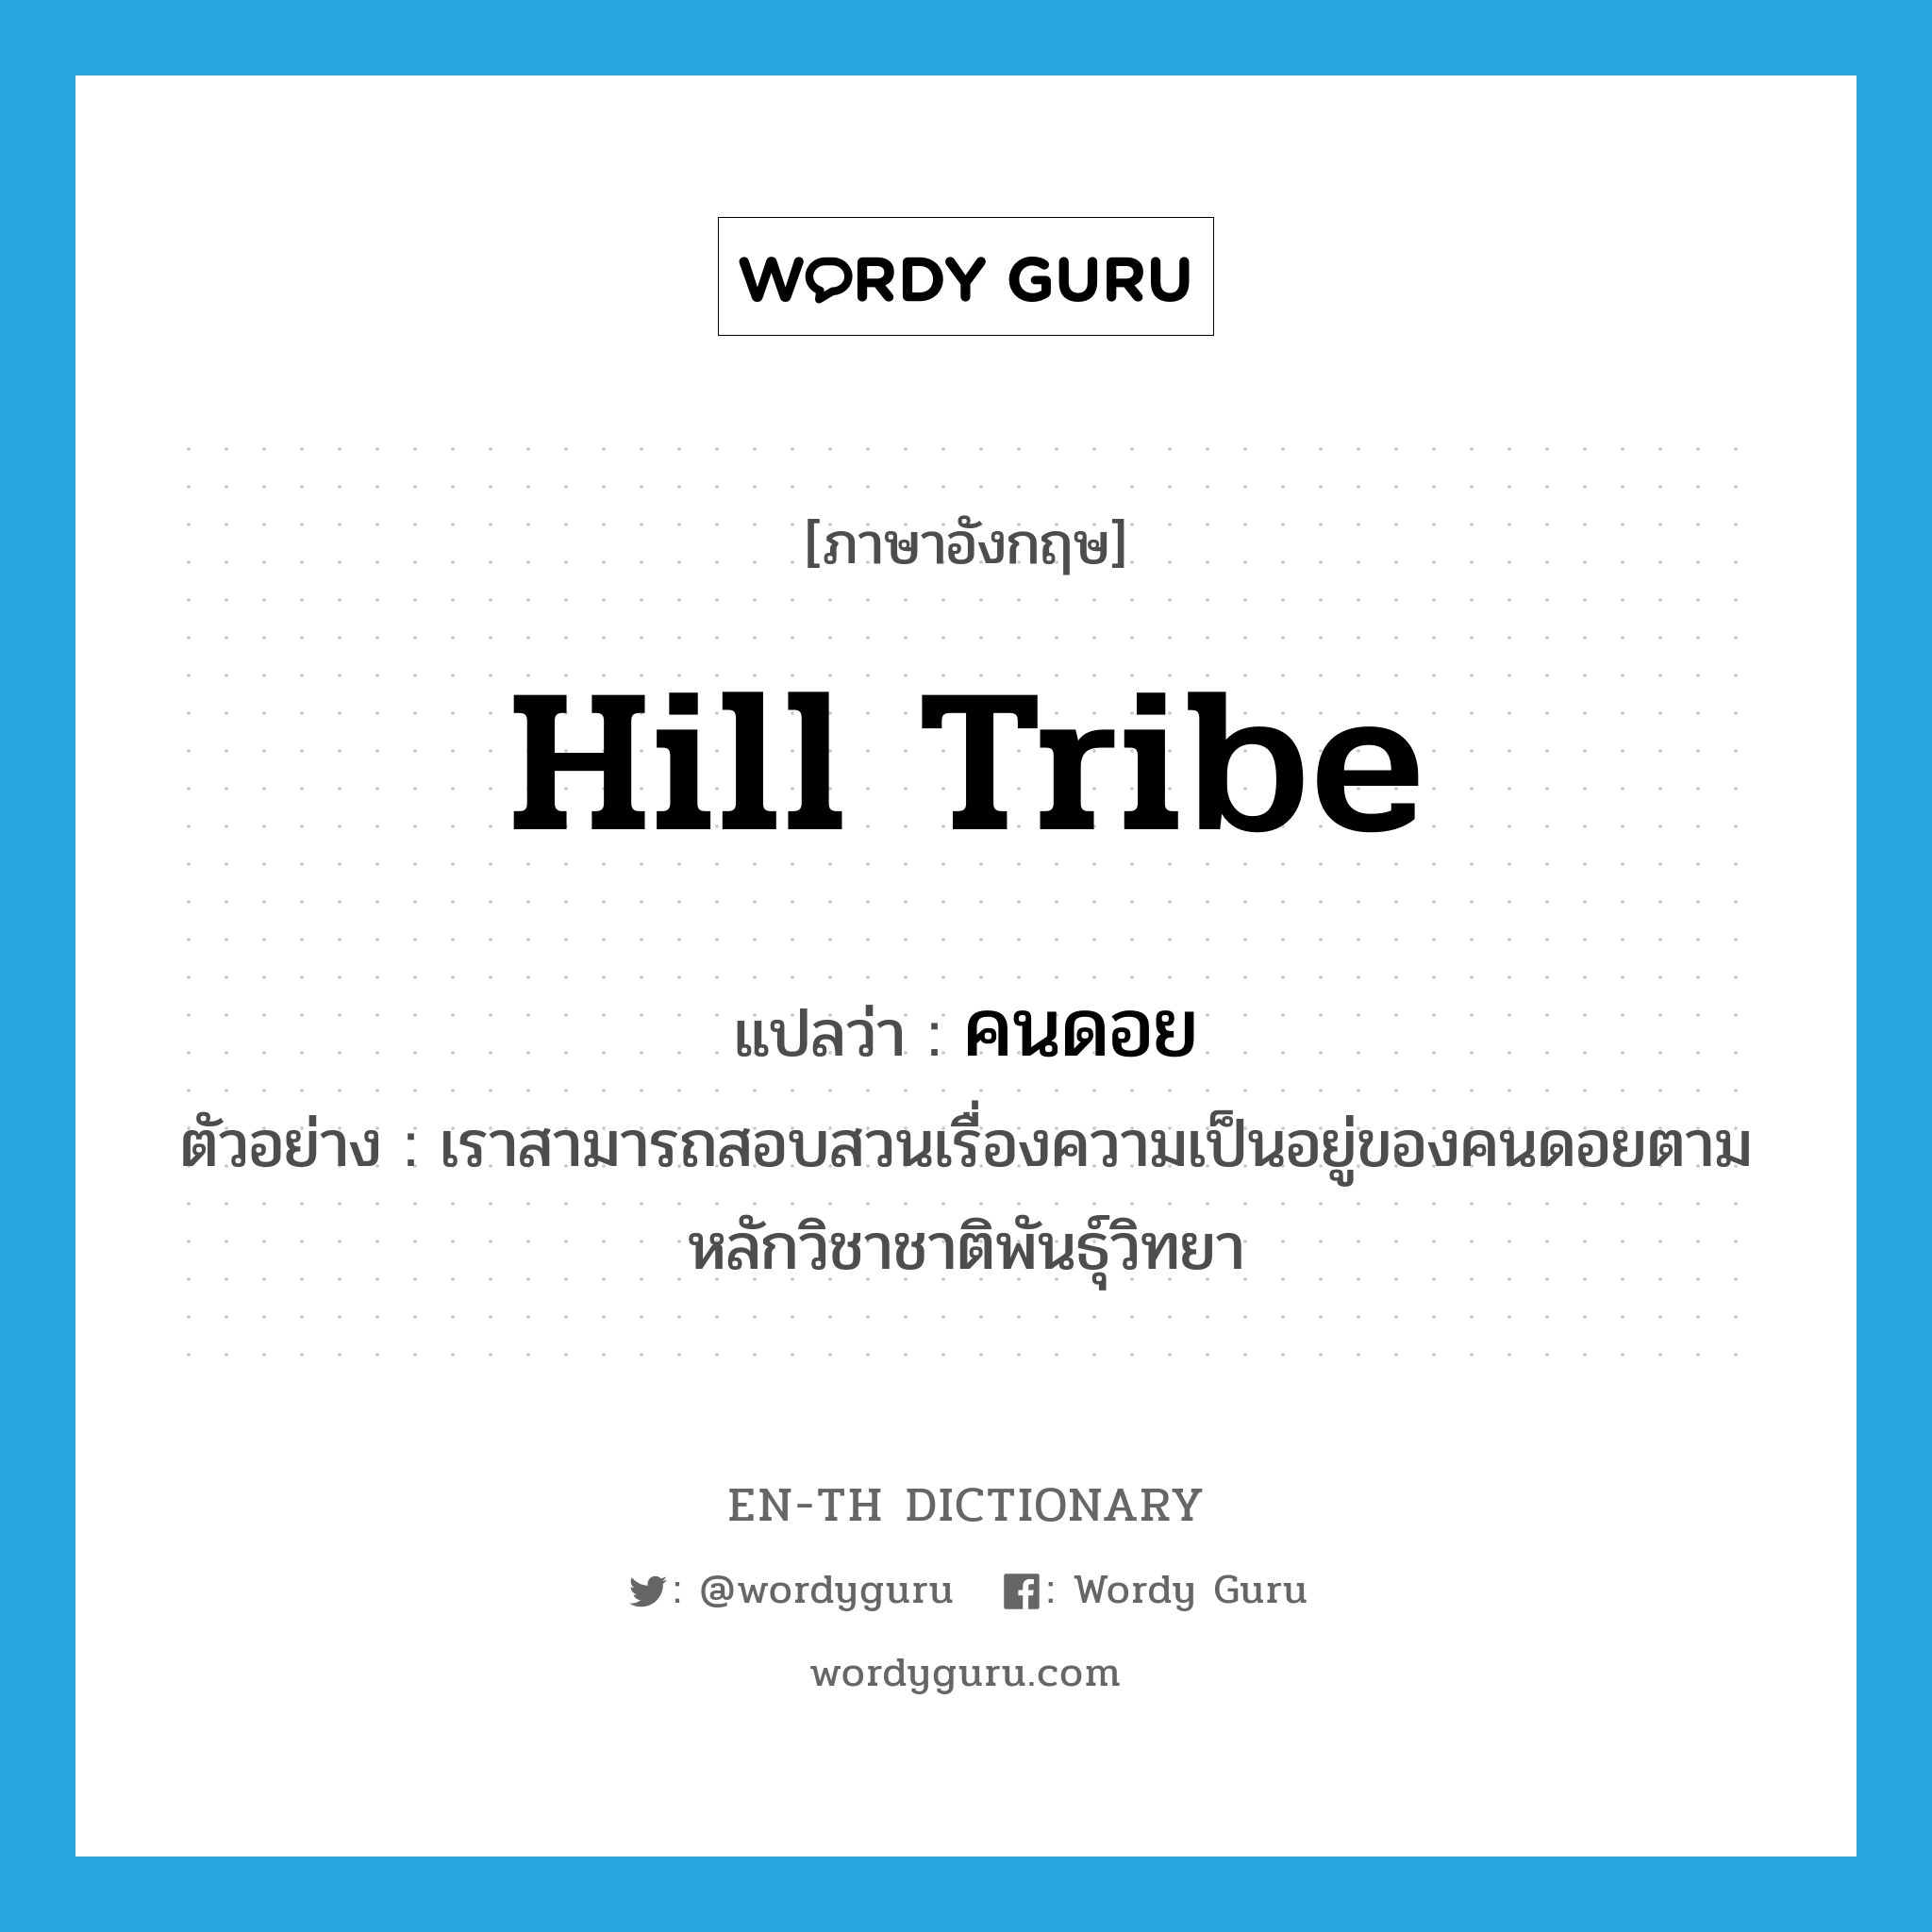 hill tribe แปลว่า?, คำศัพท์ภาษาอังกฤษ hill tribe แปลว่า คนดอย ประเภท N ตัวอย่าง เราสามารถสอบสวนเรื่องความเป็นอยู่ของคนดอยตามหลักวิชาชาติพันธุ์วิทยา หมวด N